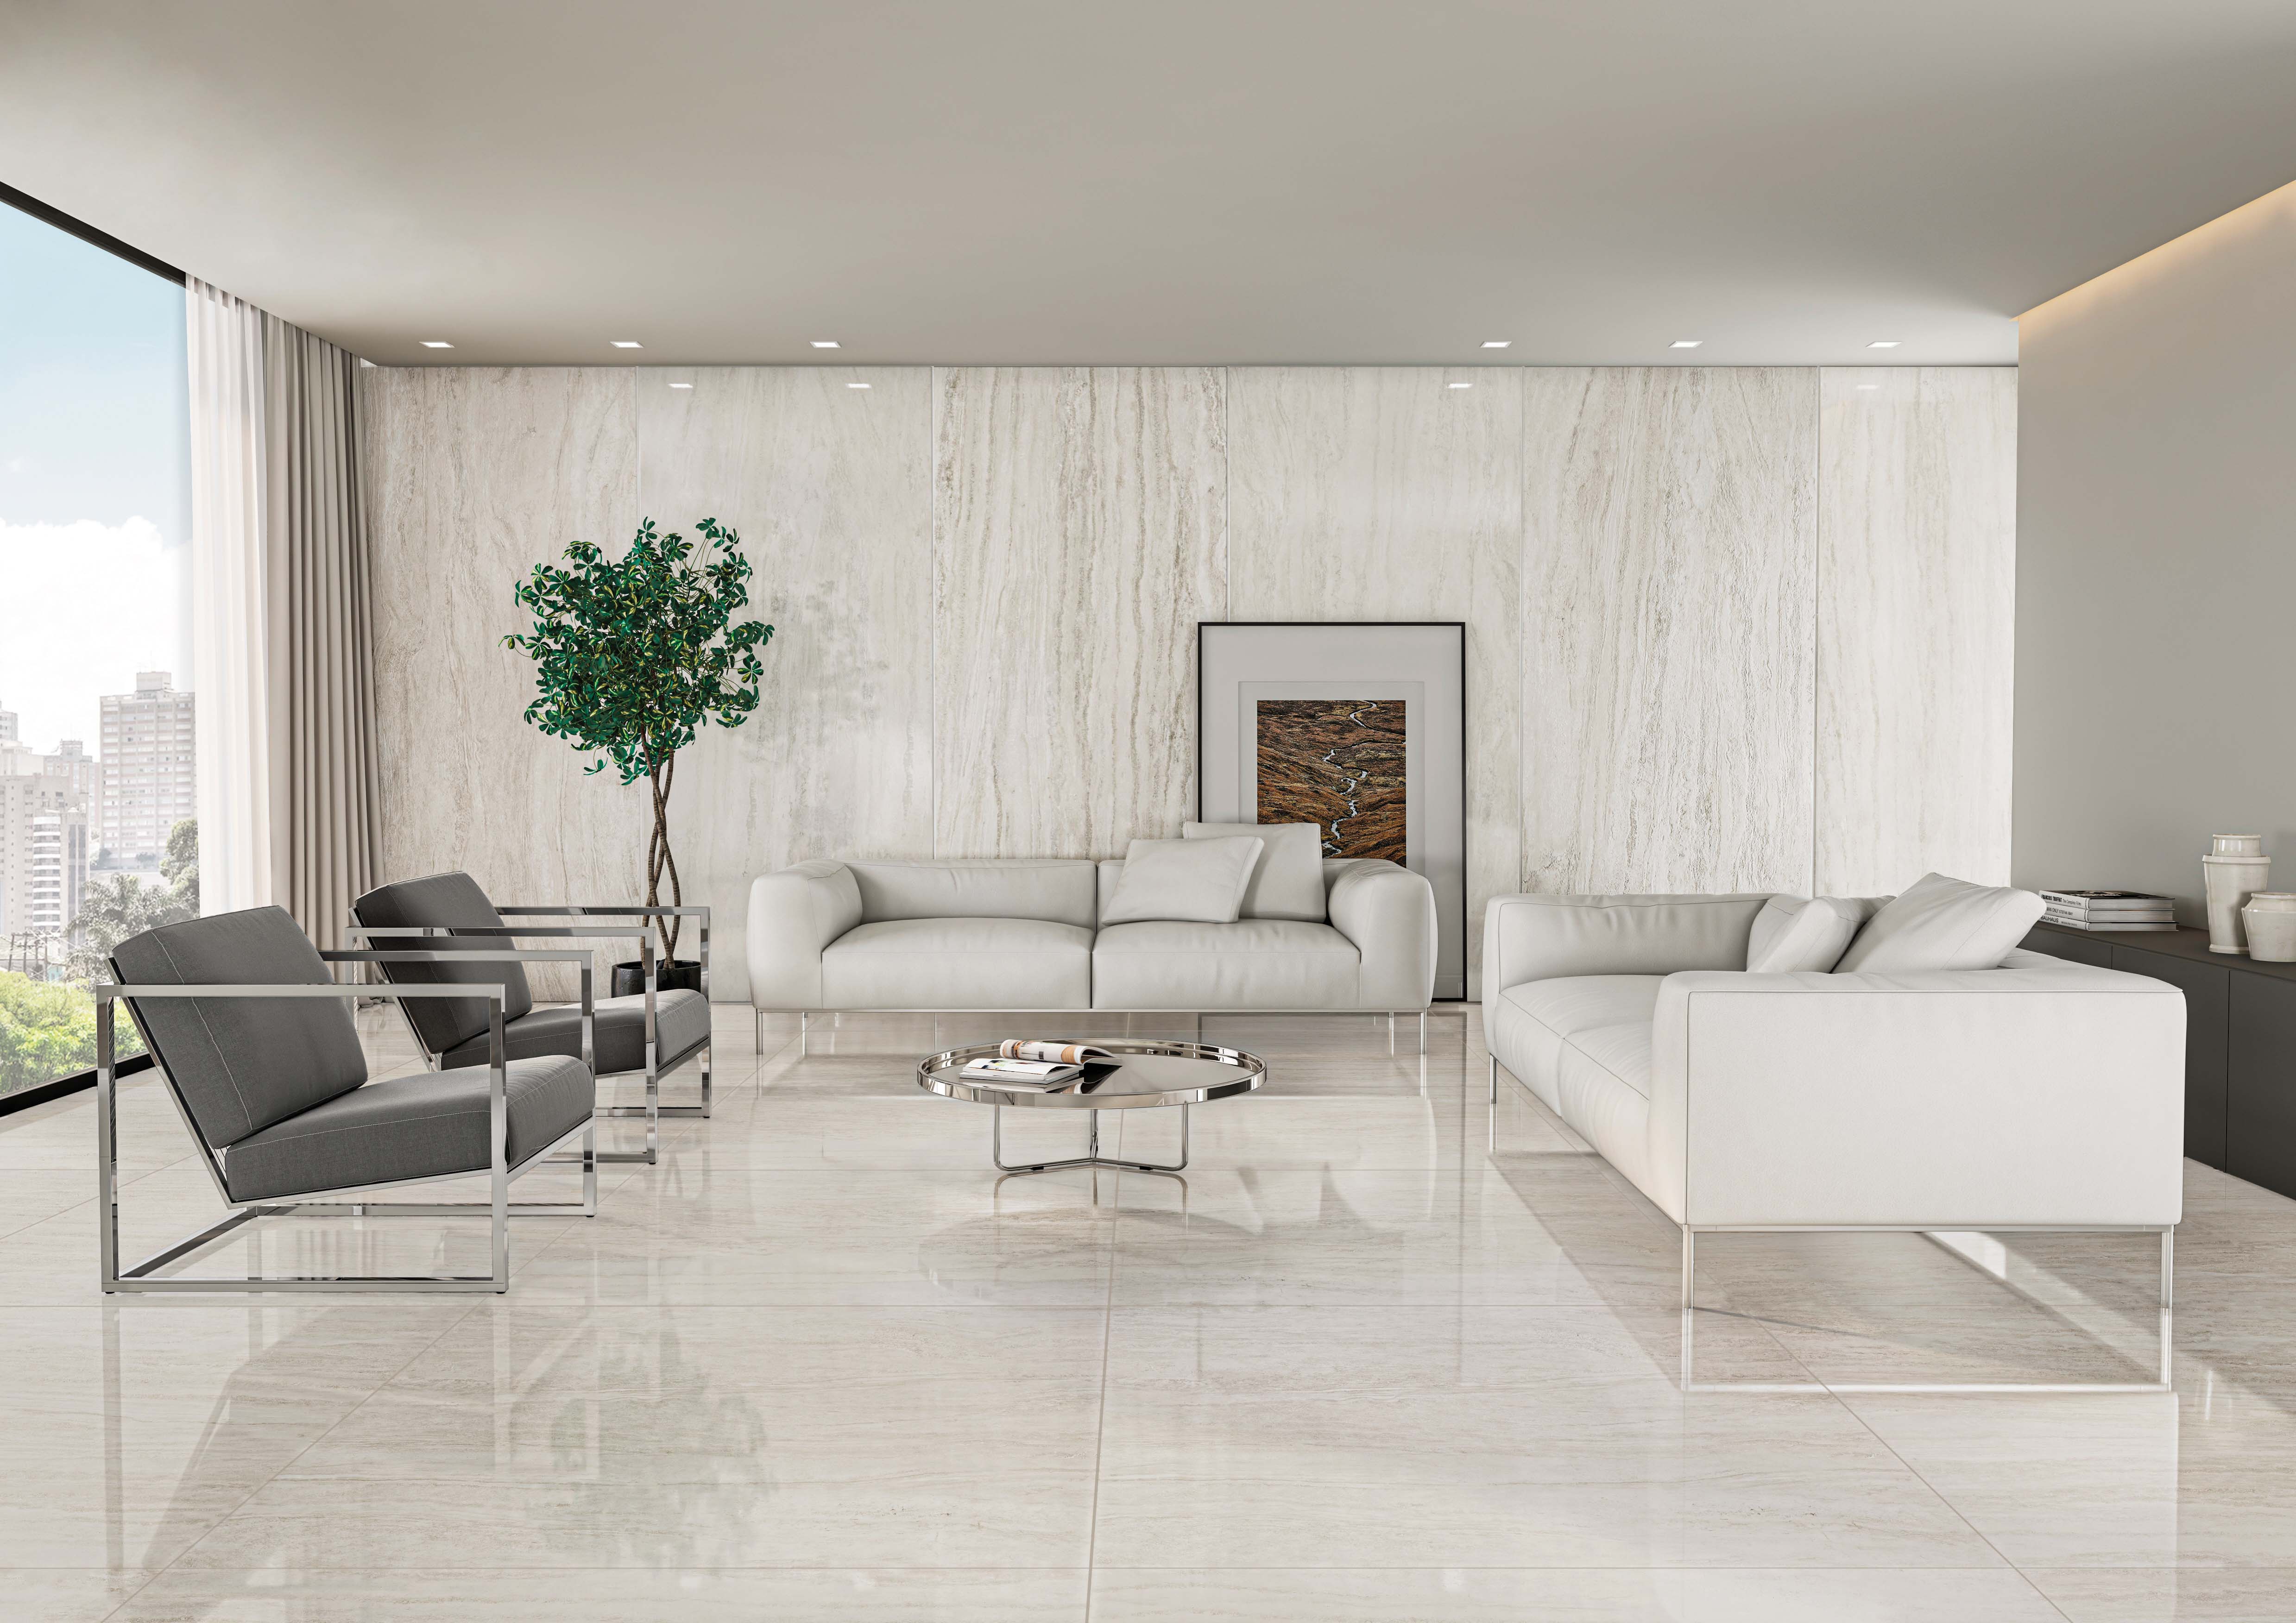 Inspiração de sala de estar com aplicação do Travertino Navona Grigio no piso (Foto: Portobello S.A.)